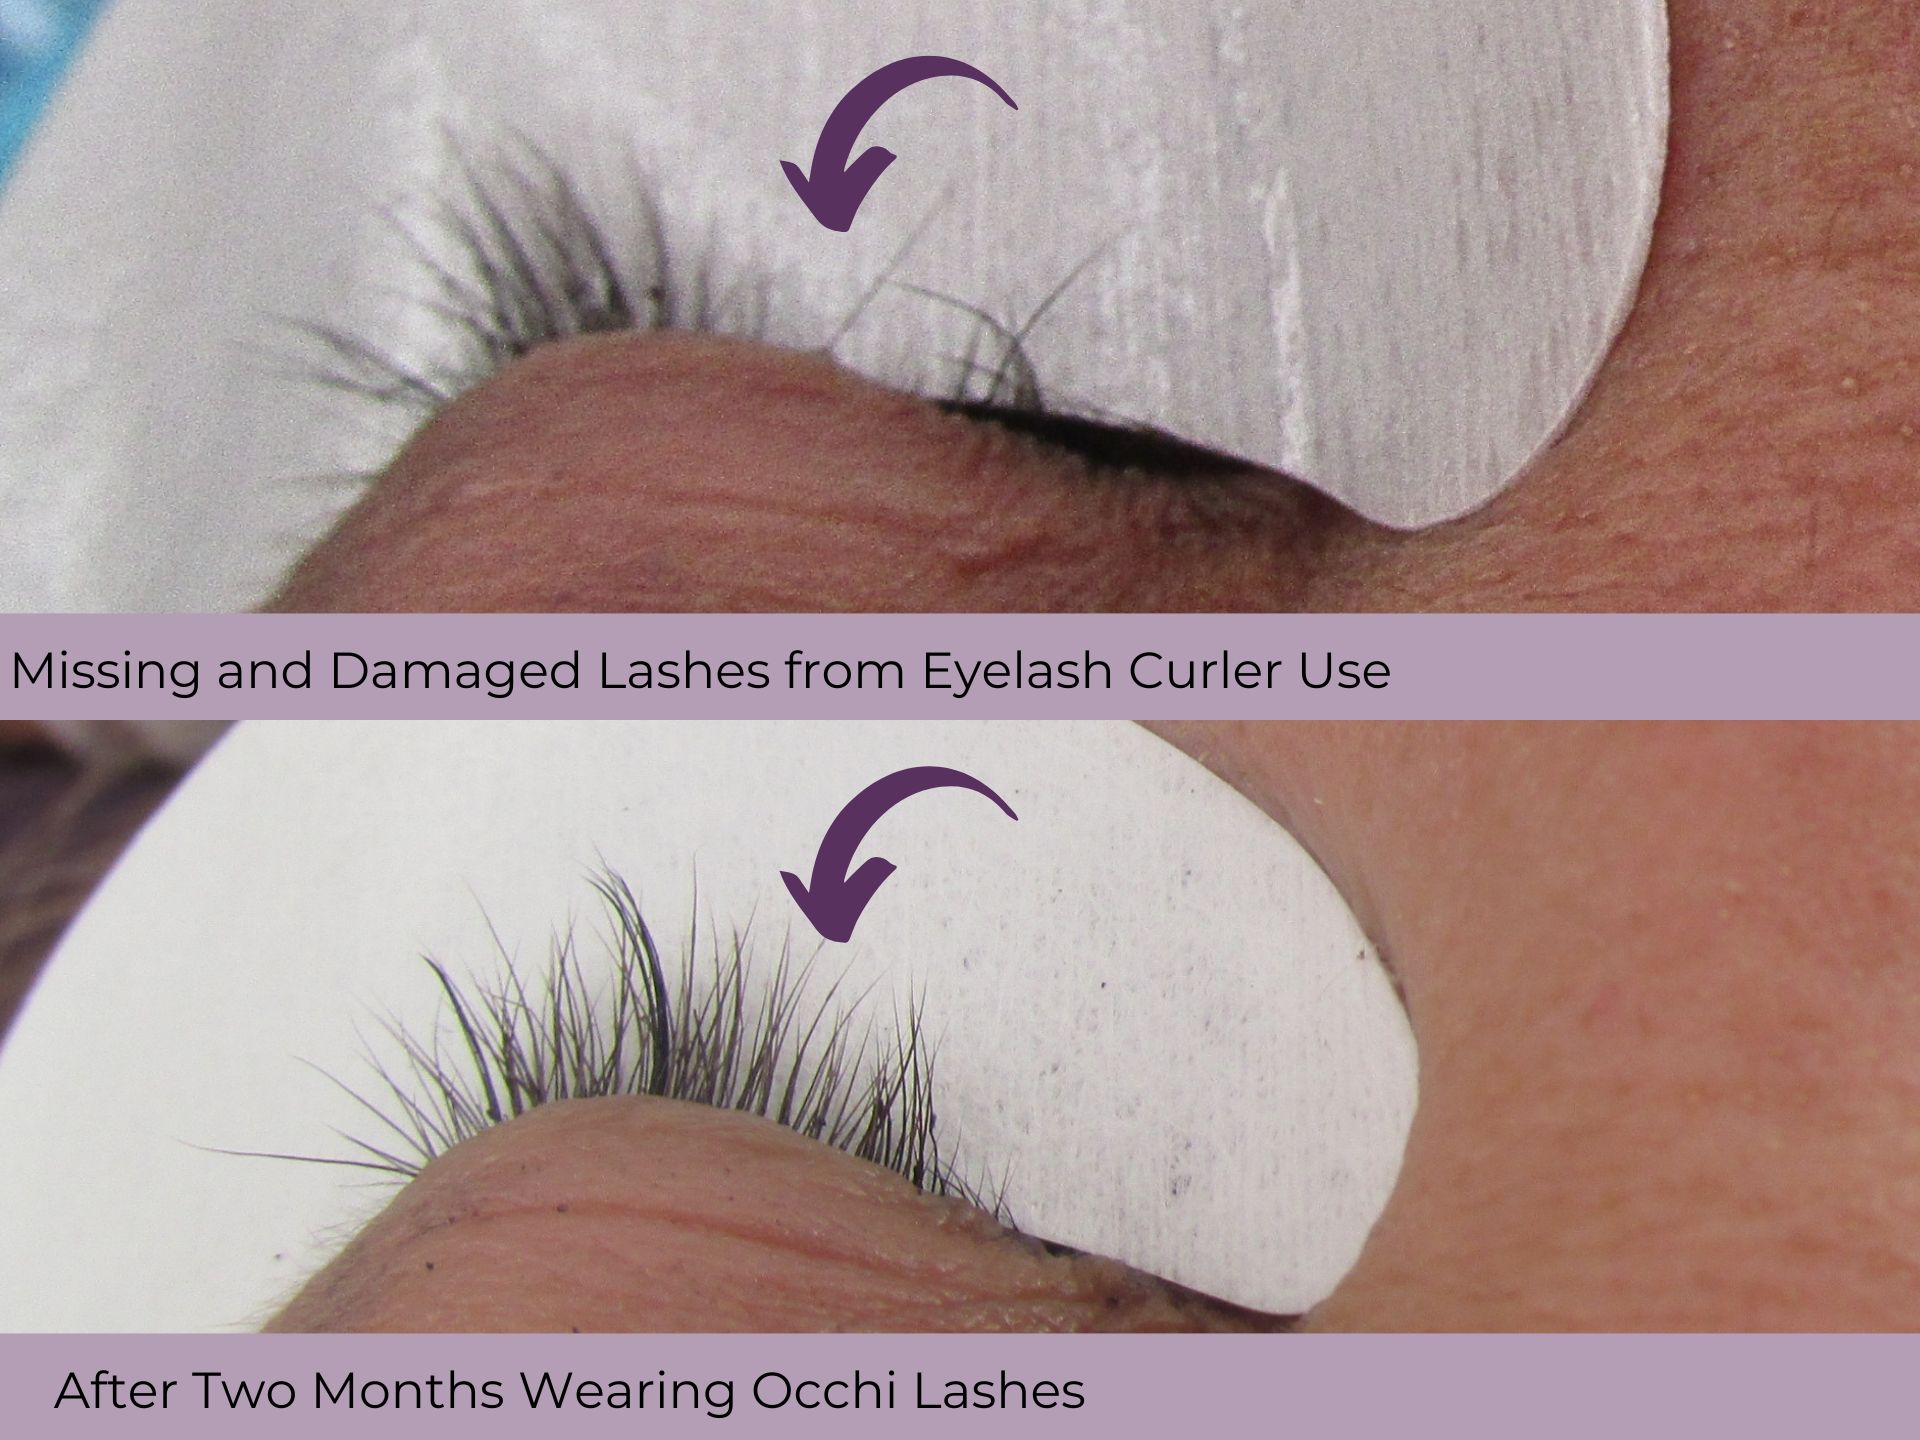 upclose image of damaged eyelashes and lashes grown back in